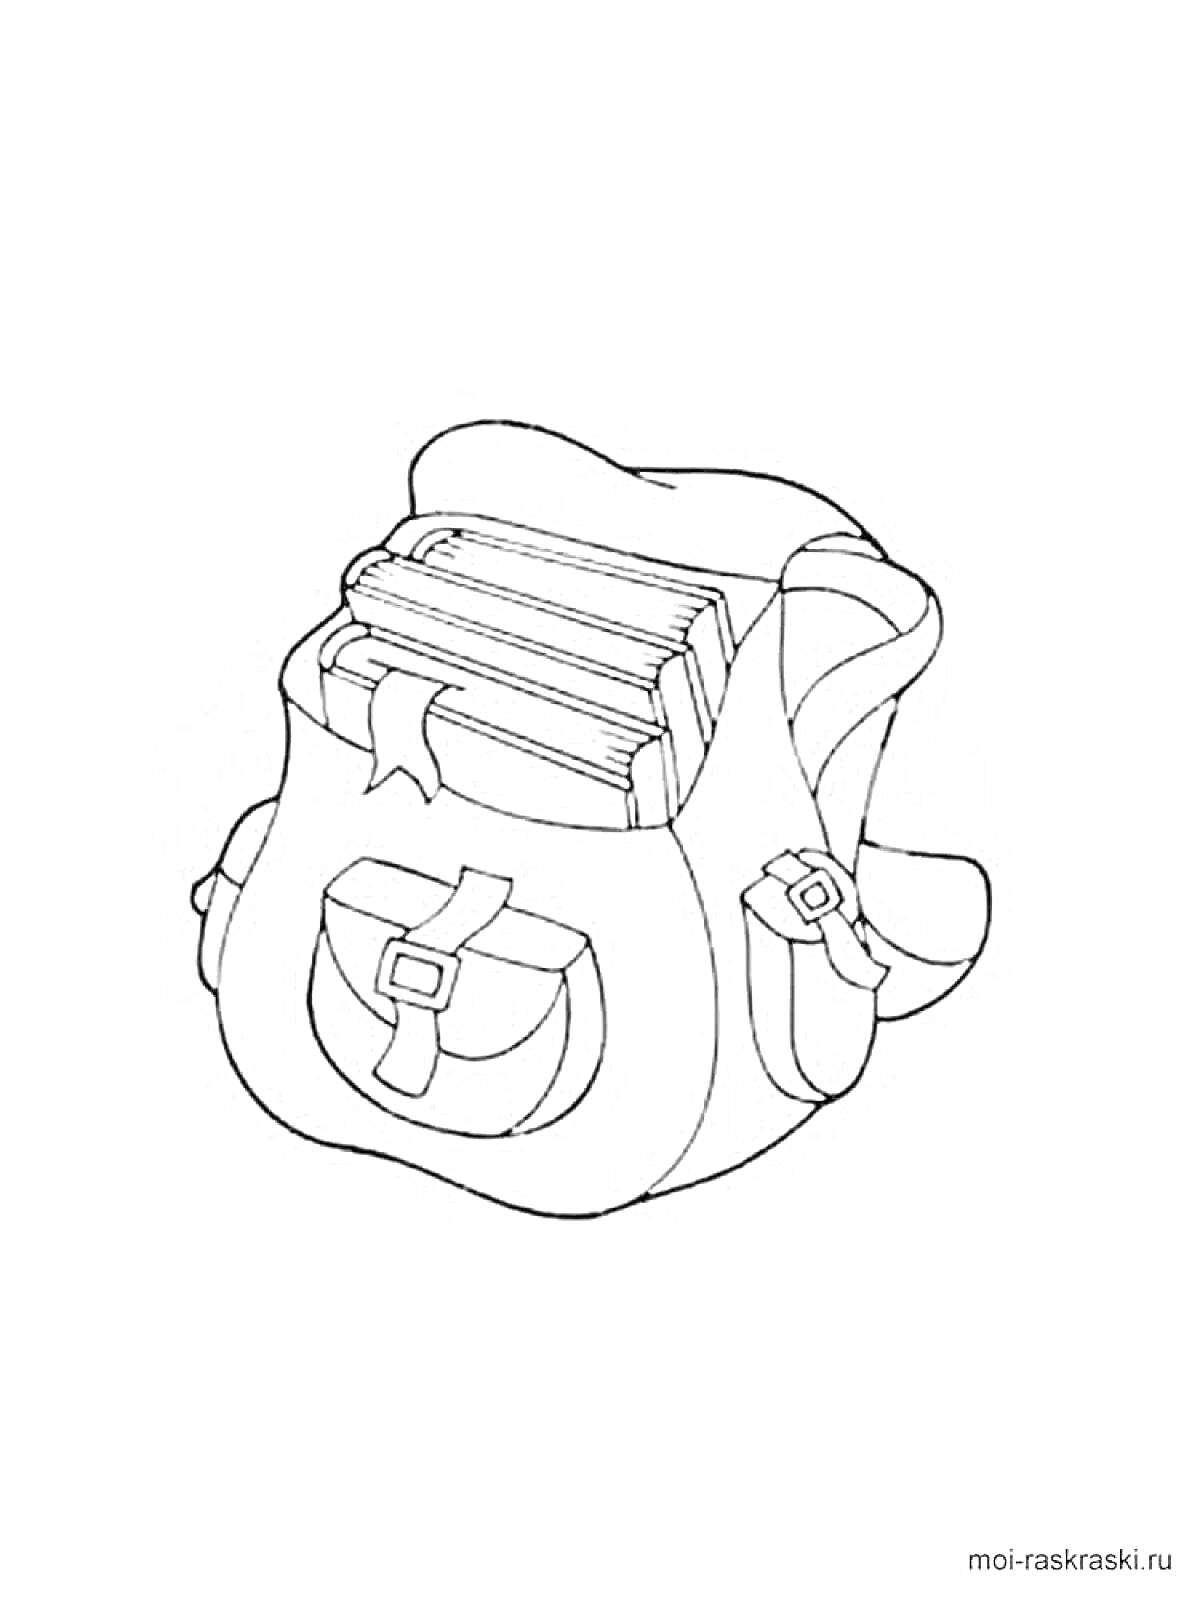 Портфель с книгами внутри и карманом с застежкой на передней стороне